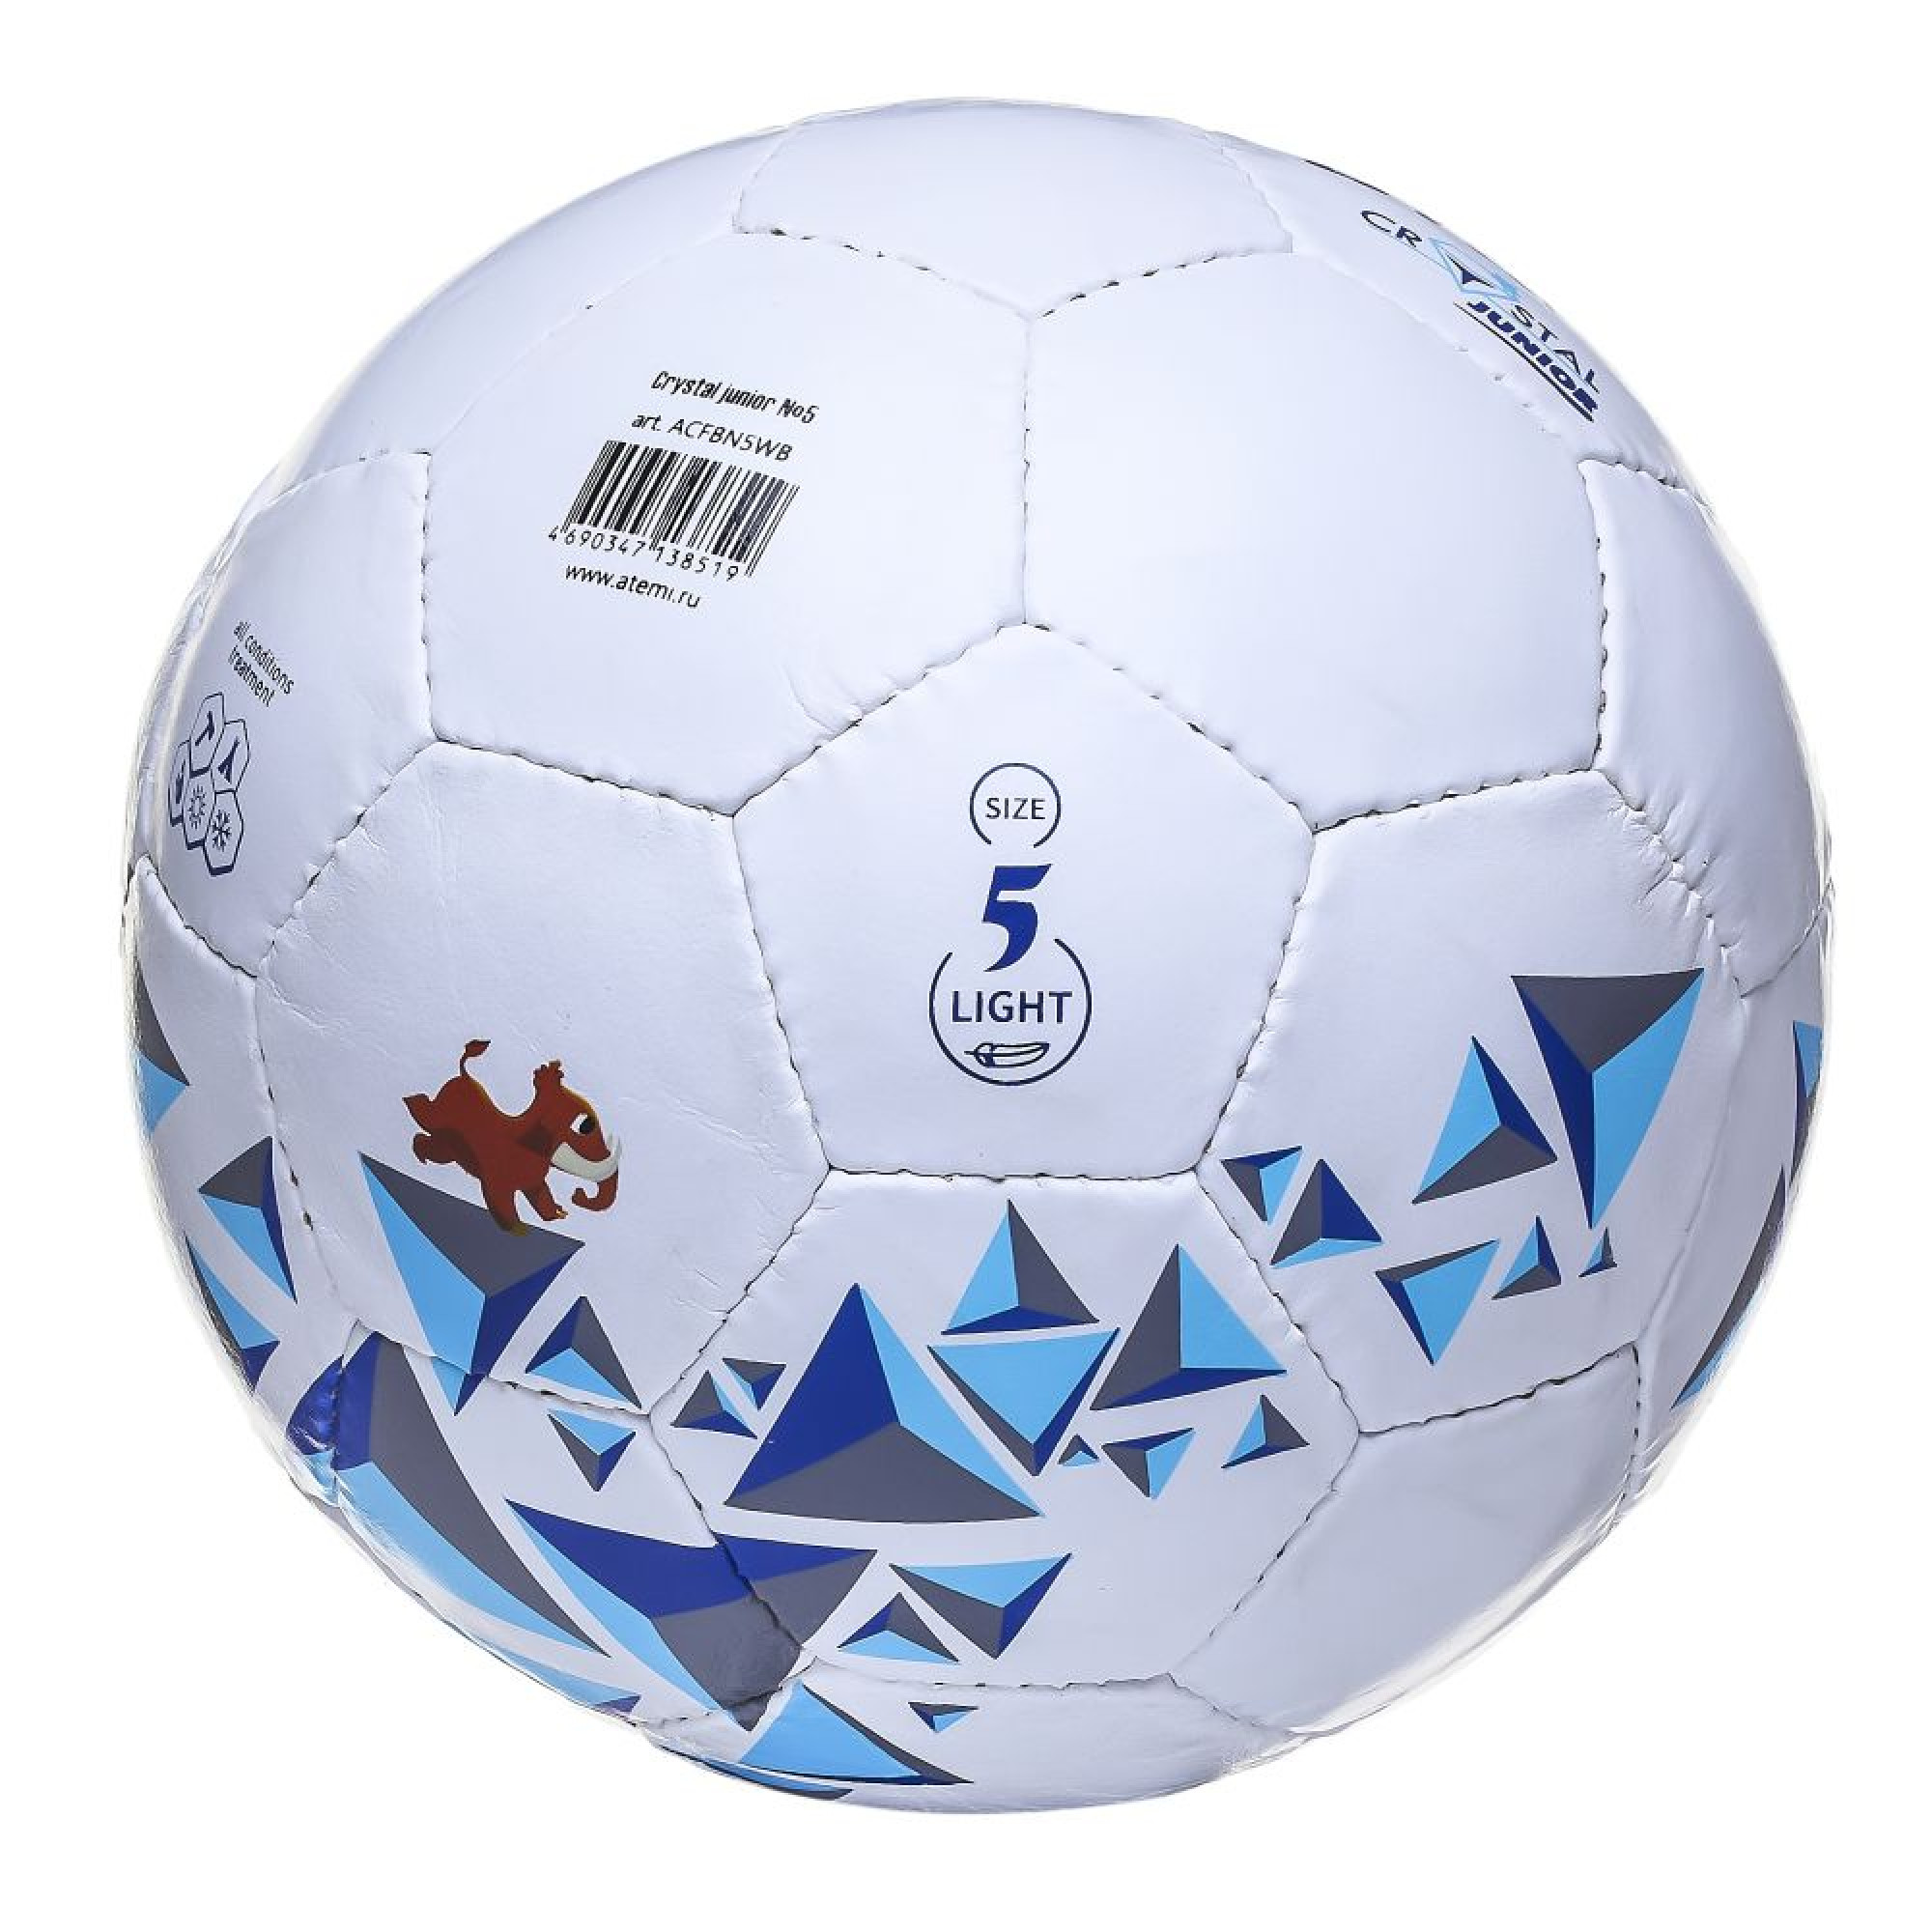 Мяч футбольный ATEMI CRYSTAL JUNIOR, PVC, бел/син/гол, р.5